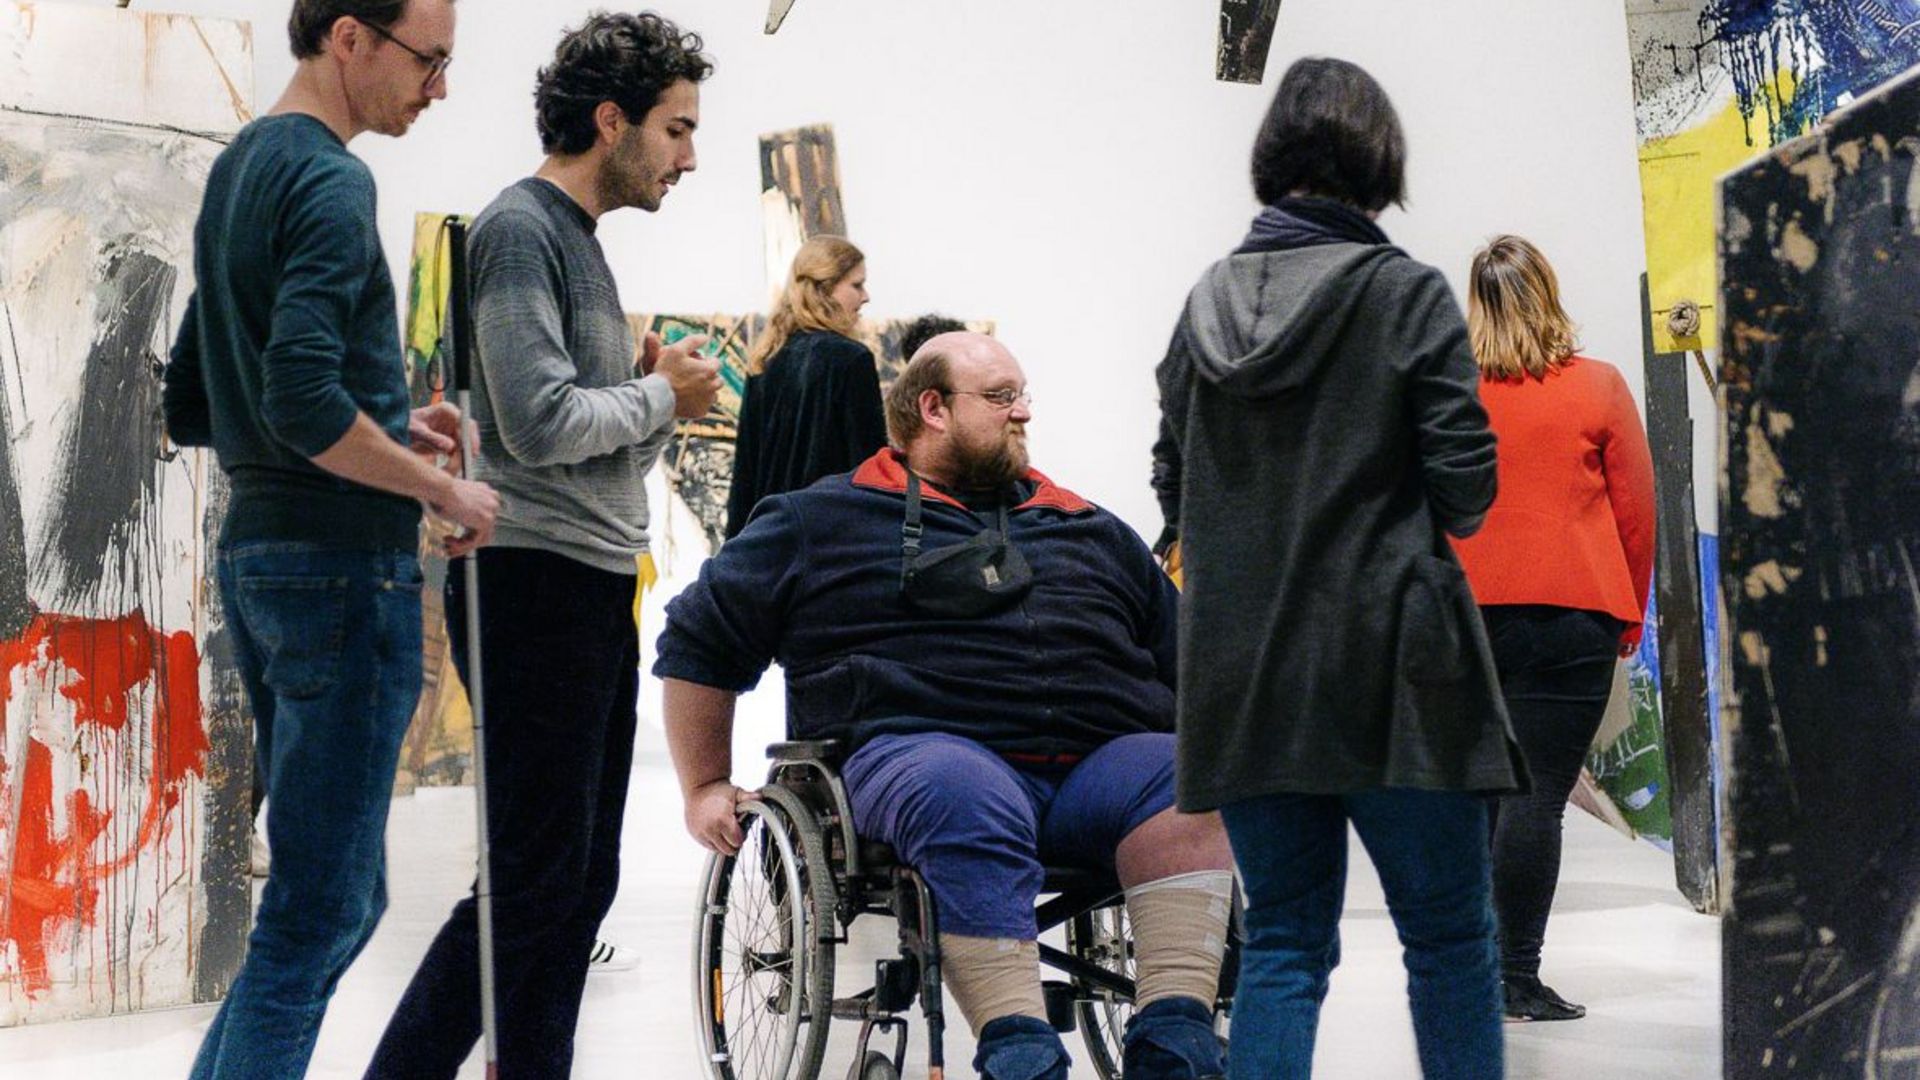 Foto: Menschen bewegen sich in einer Rauminstallation. Eine Person mit Rollstuhl, eine Person mit Blindenlangstock.